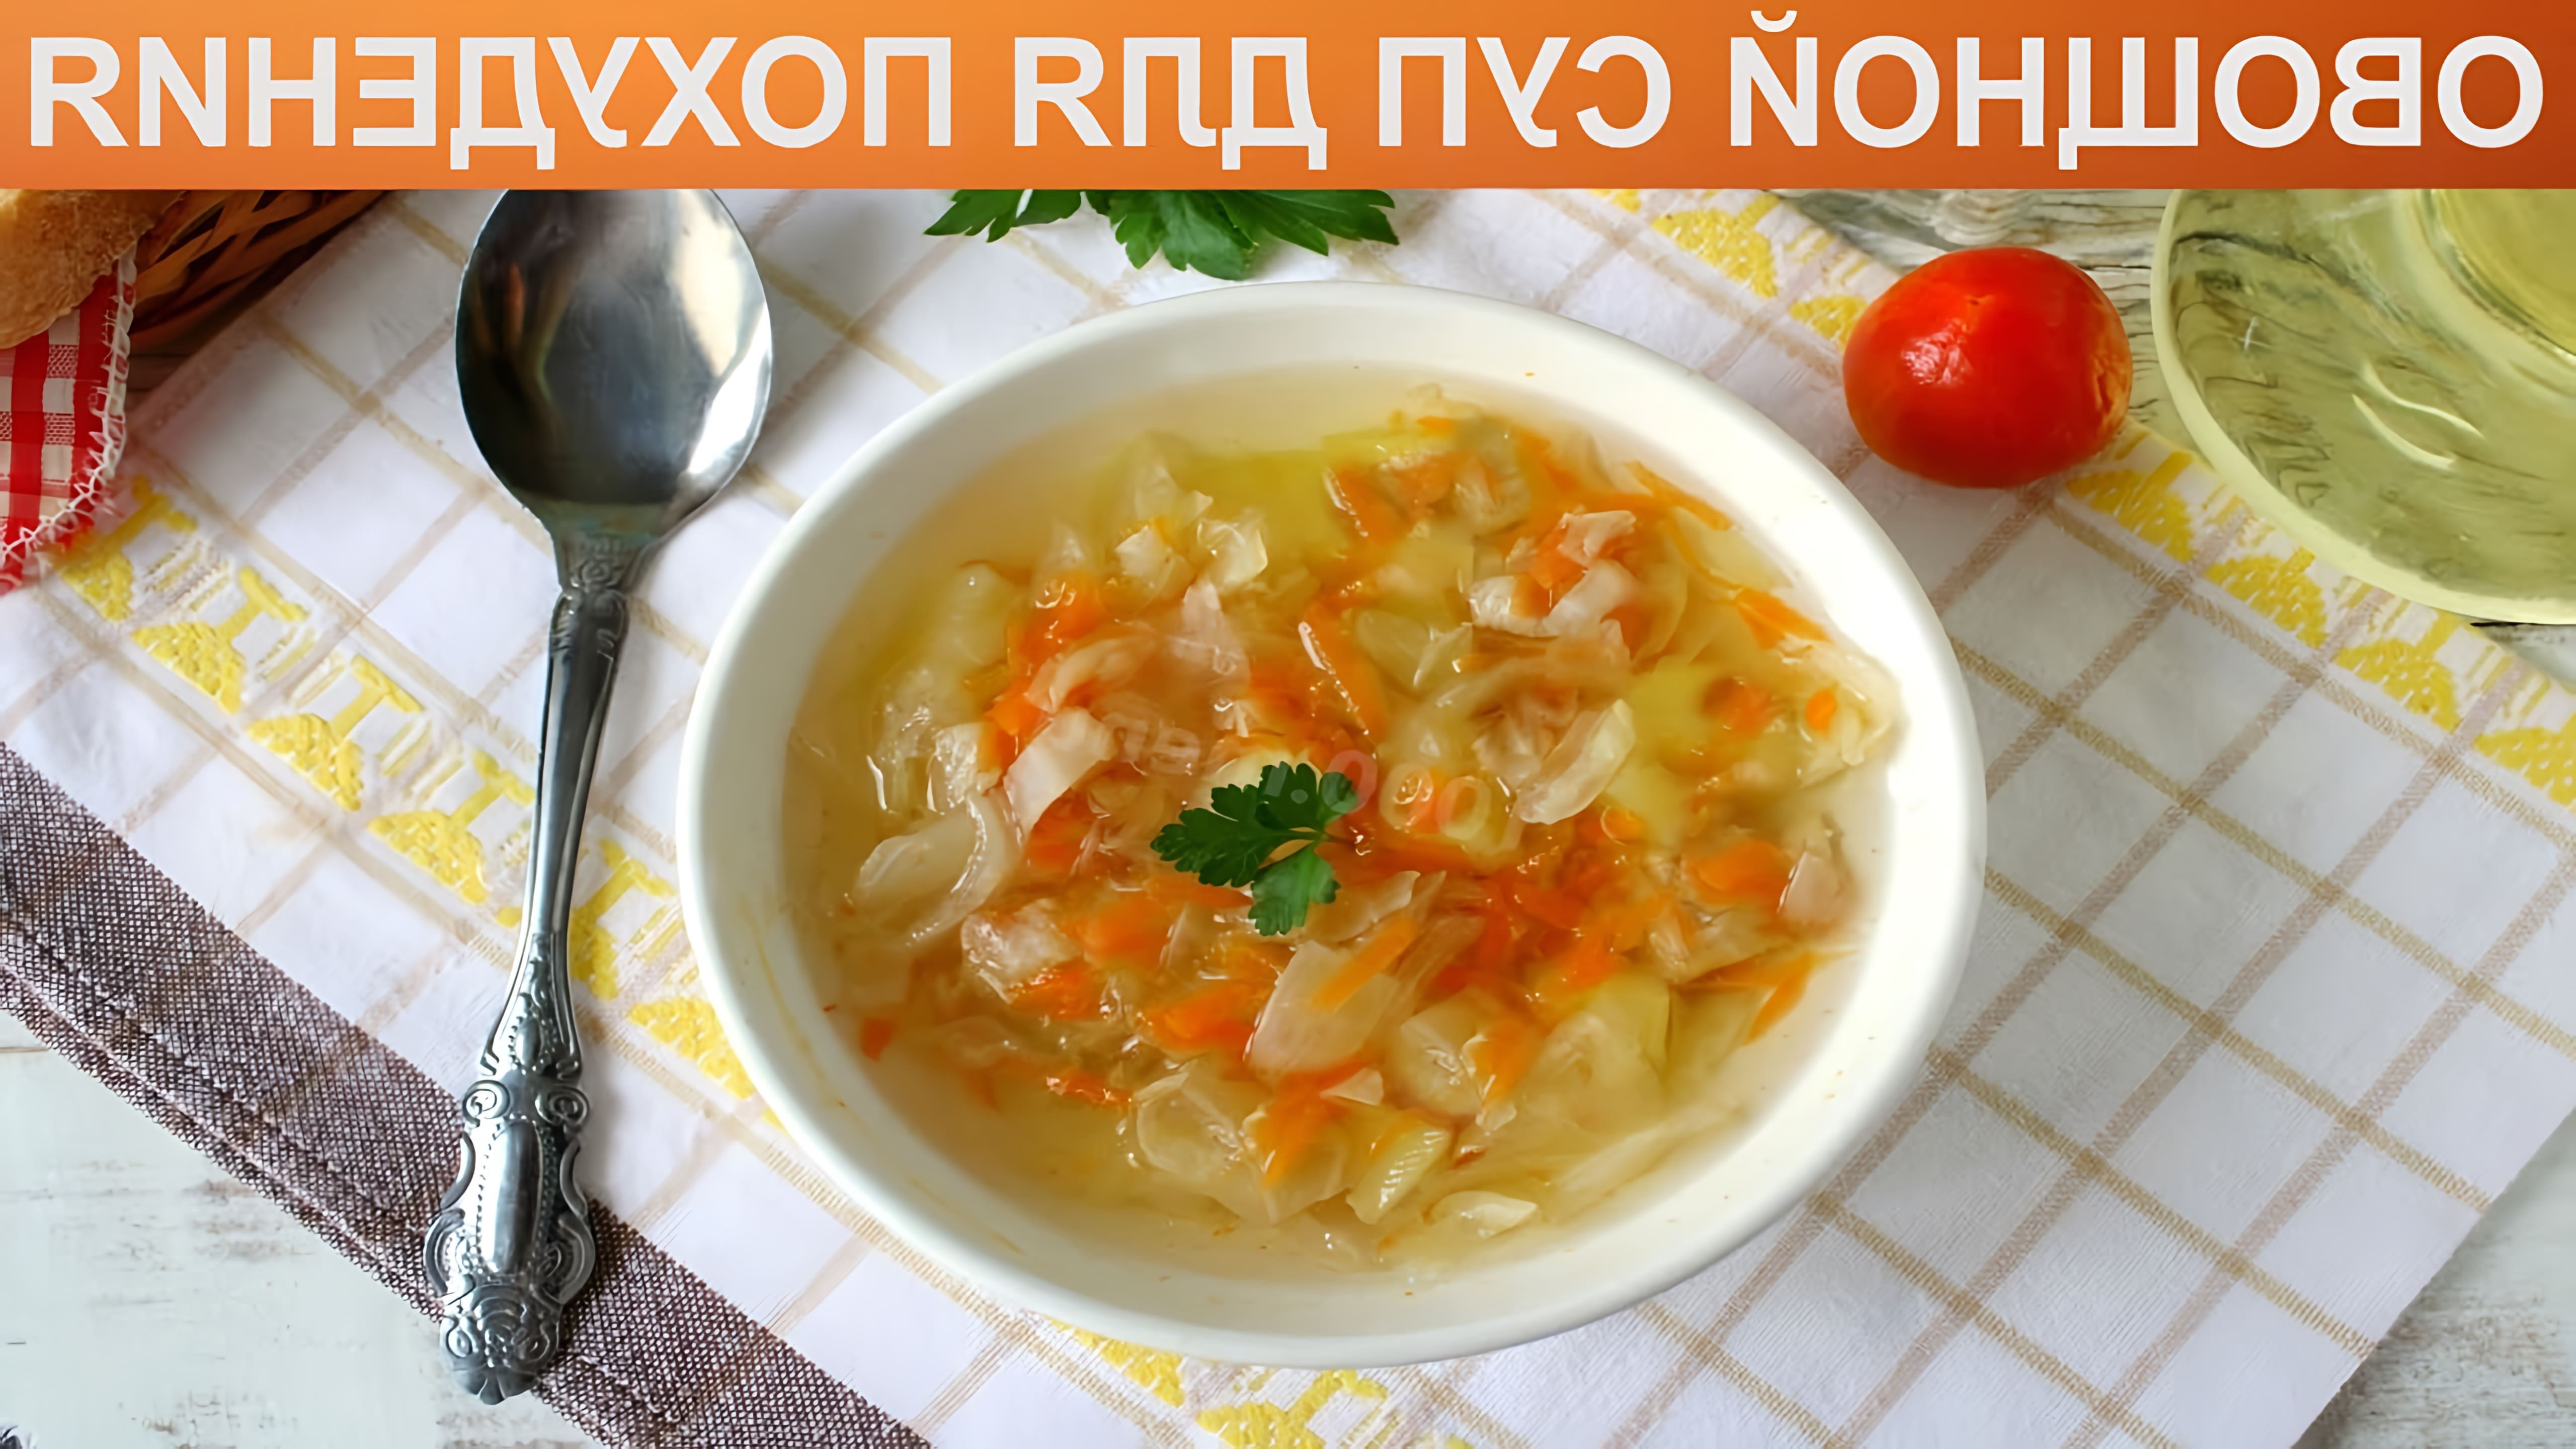 Малокалорийный, полезный и вкусный суп для стройности! Многие женщины часто задумываются о необходимости... 